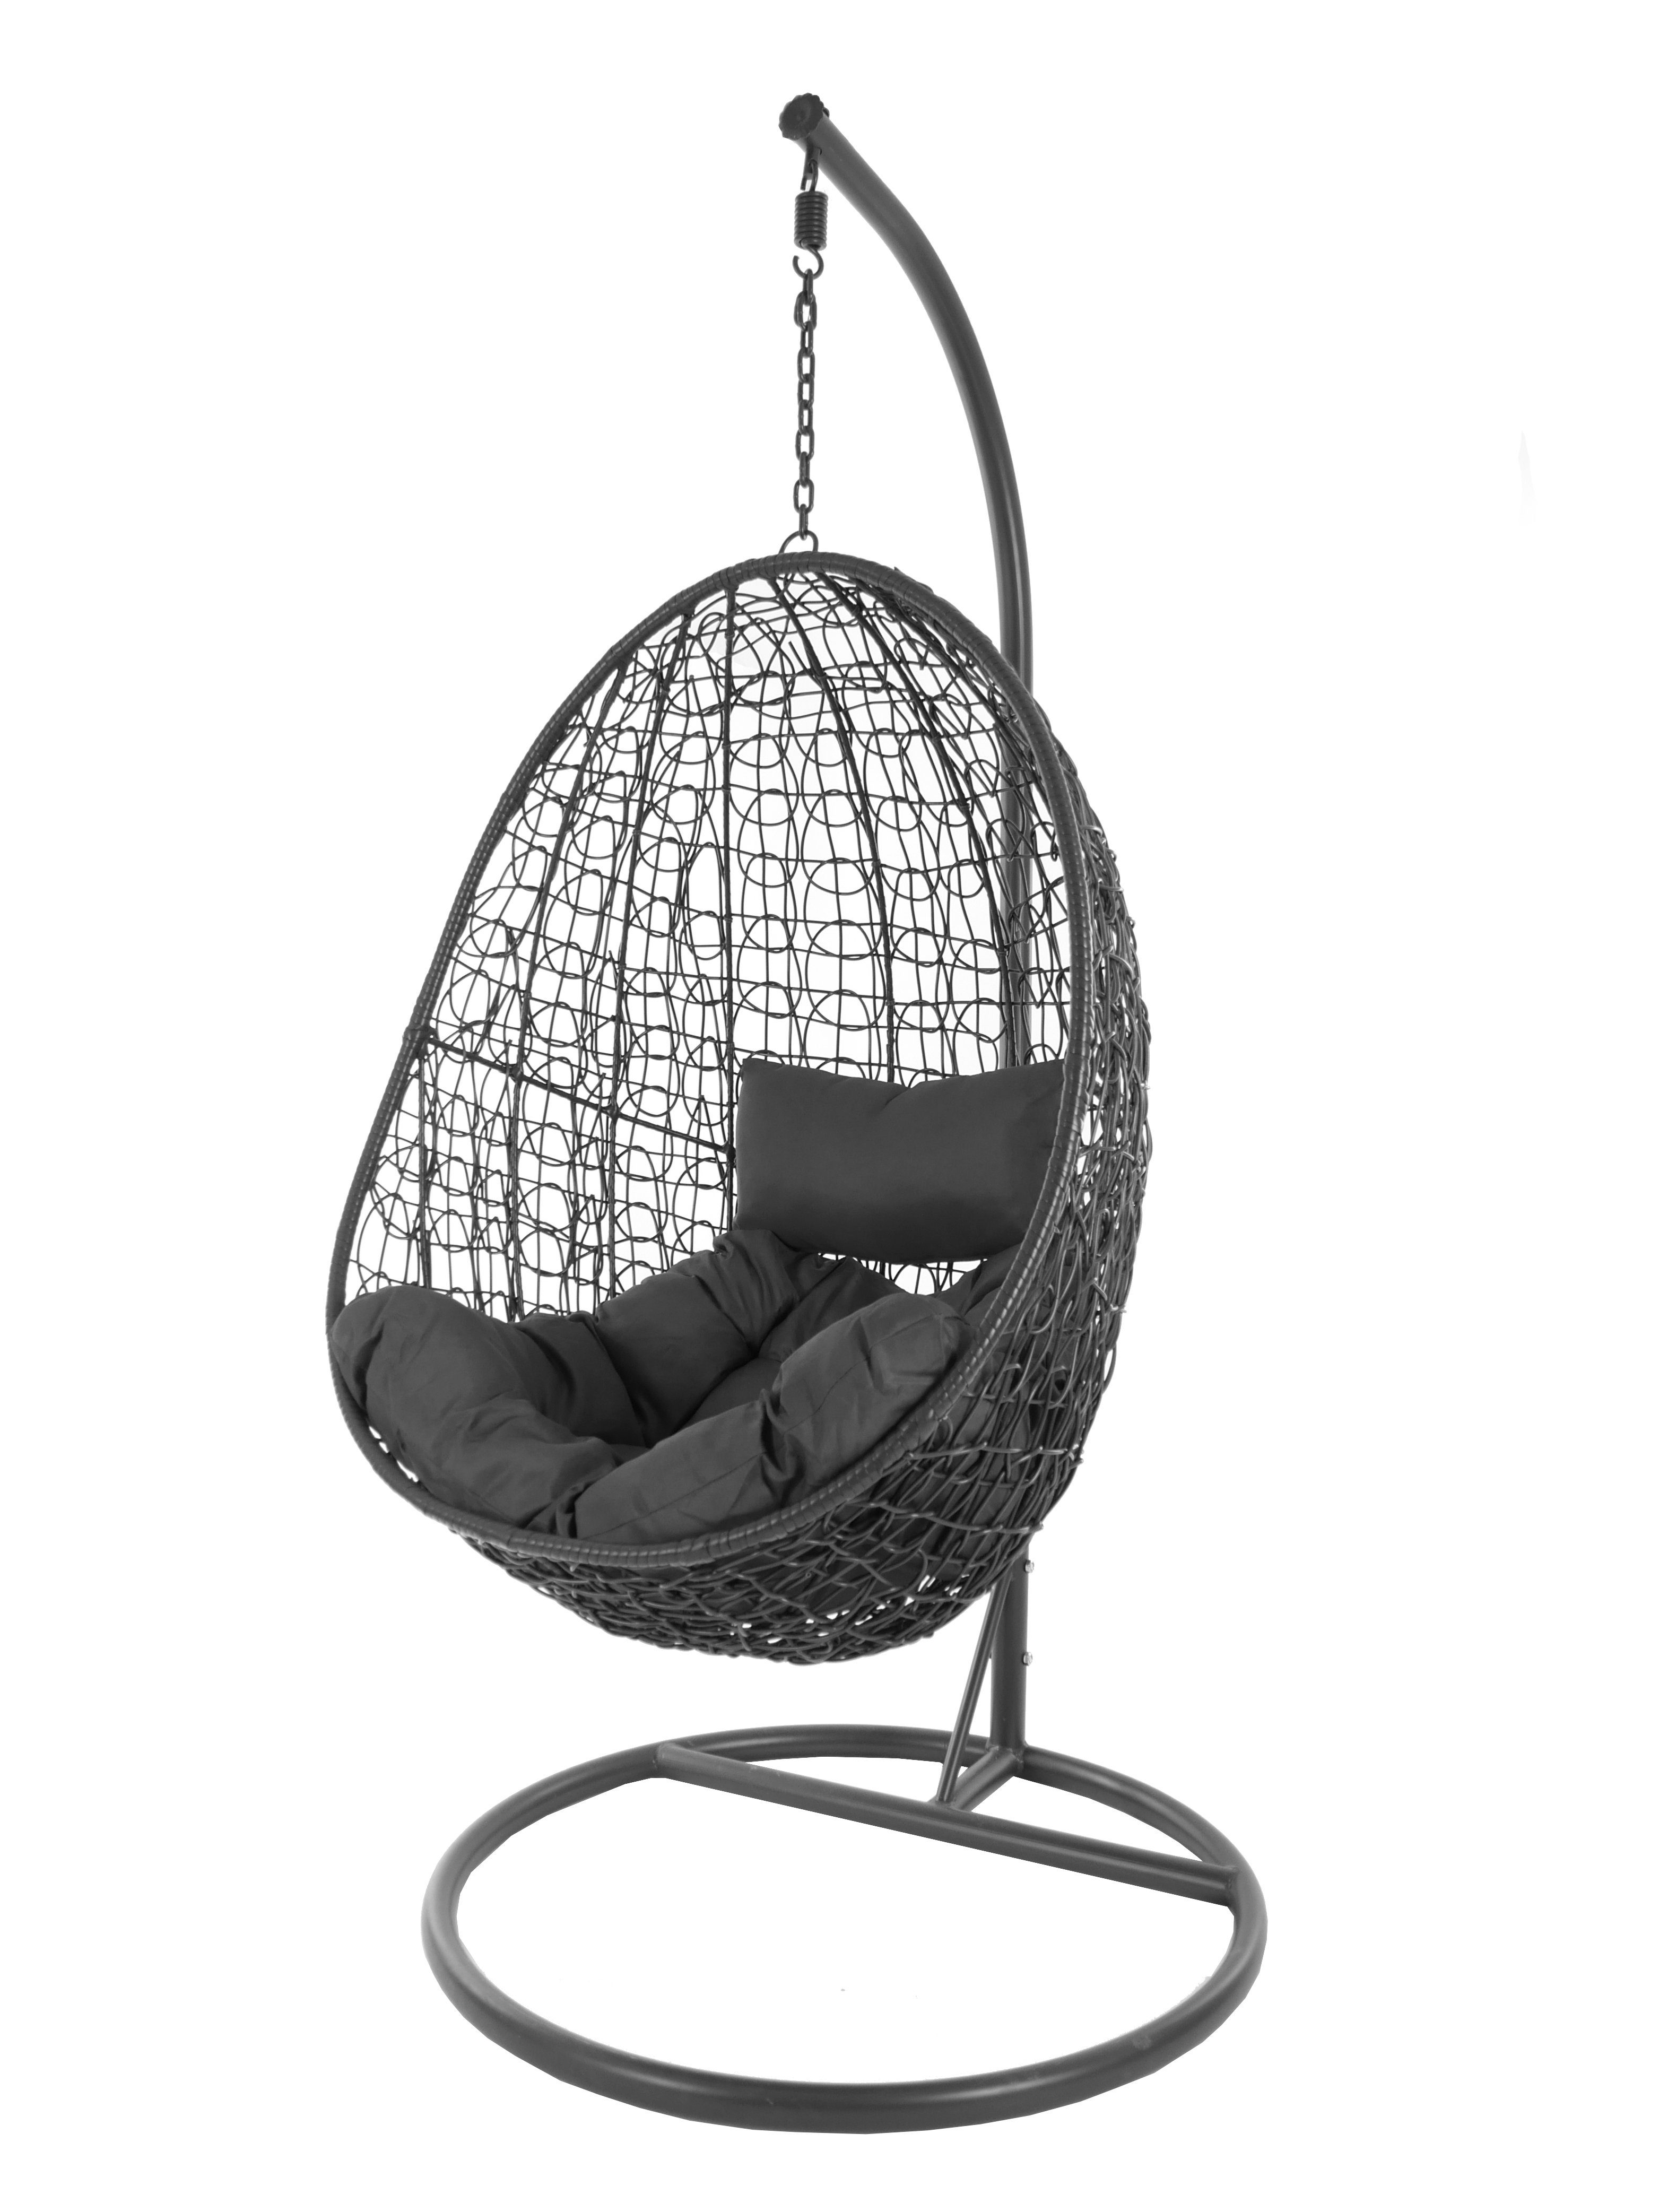 KIDEO Hängesessel Hängesessel Capdepera anthrazit, moderner Swing Chair, Schwebesessel mit Gestell und Kissen, Loungemöbel dunkelgrau (8999 shadow)